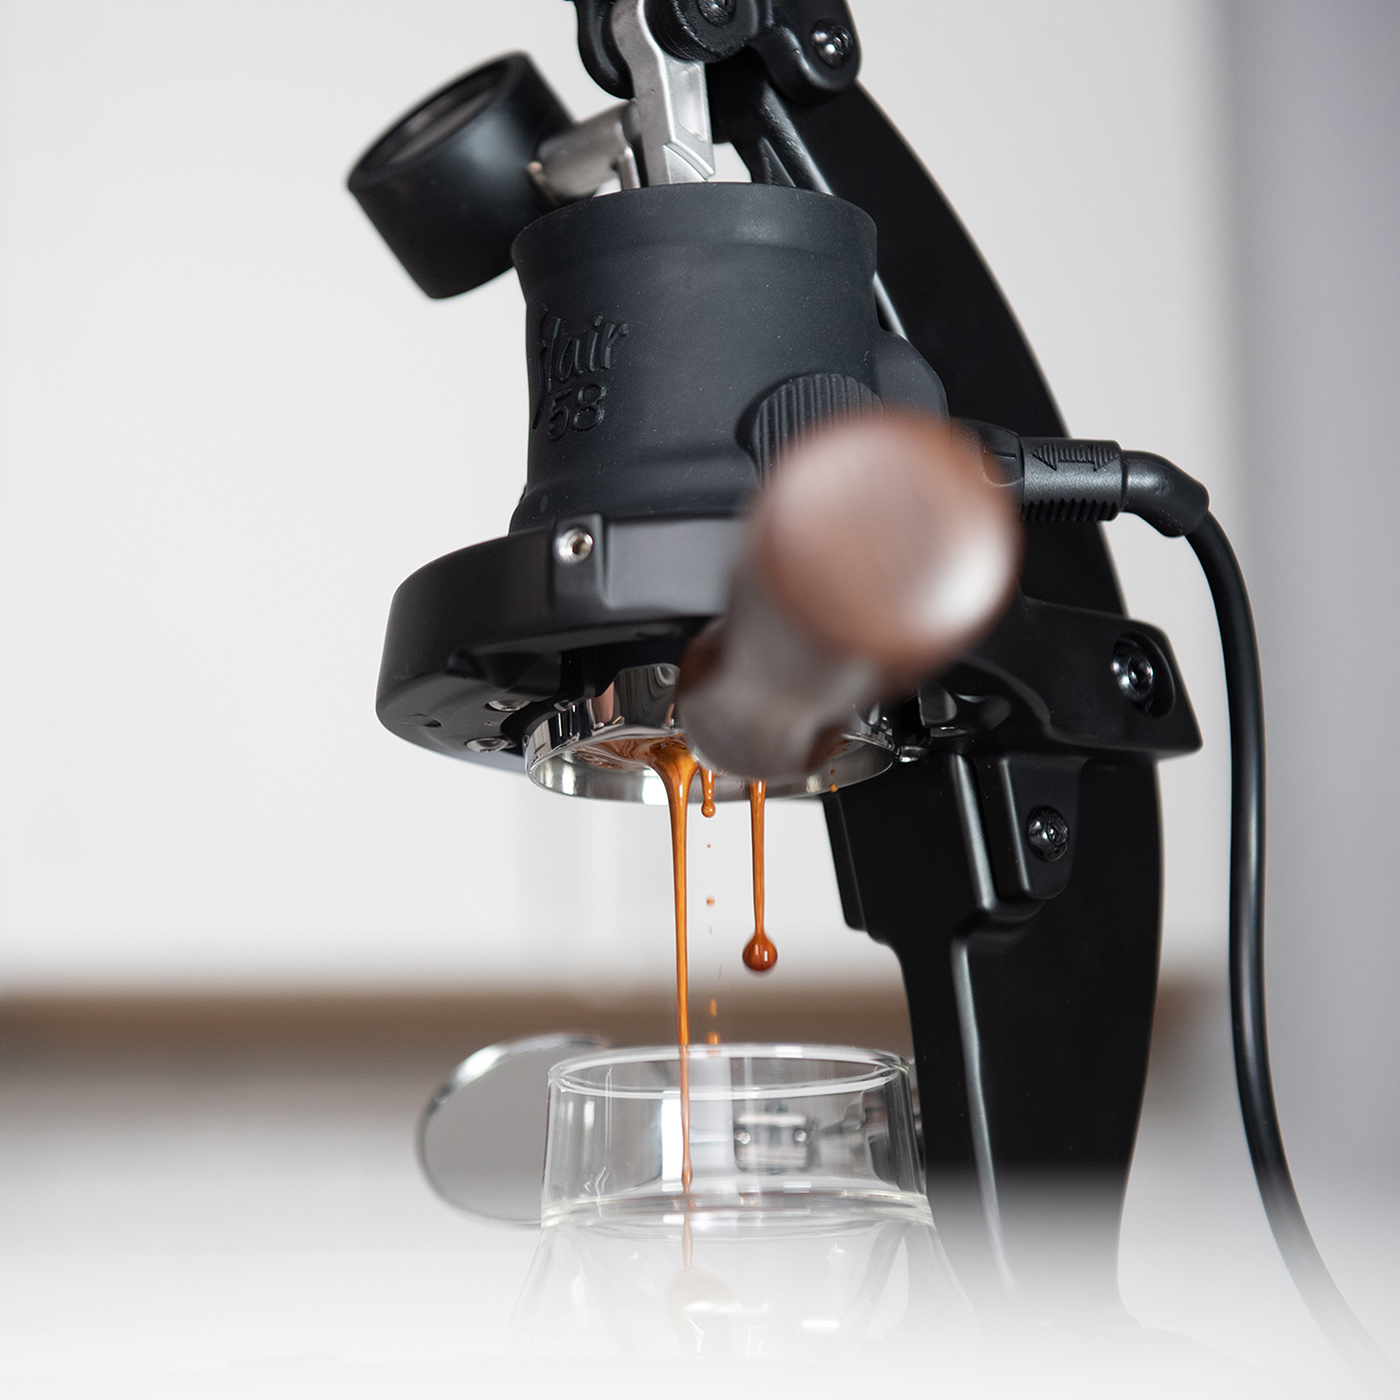 Flair 58, Lever Espresso Machine